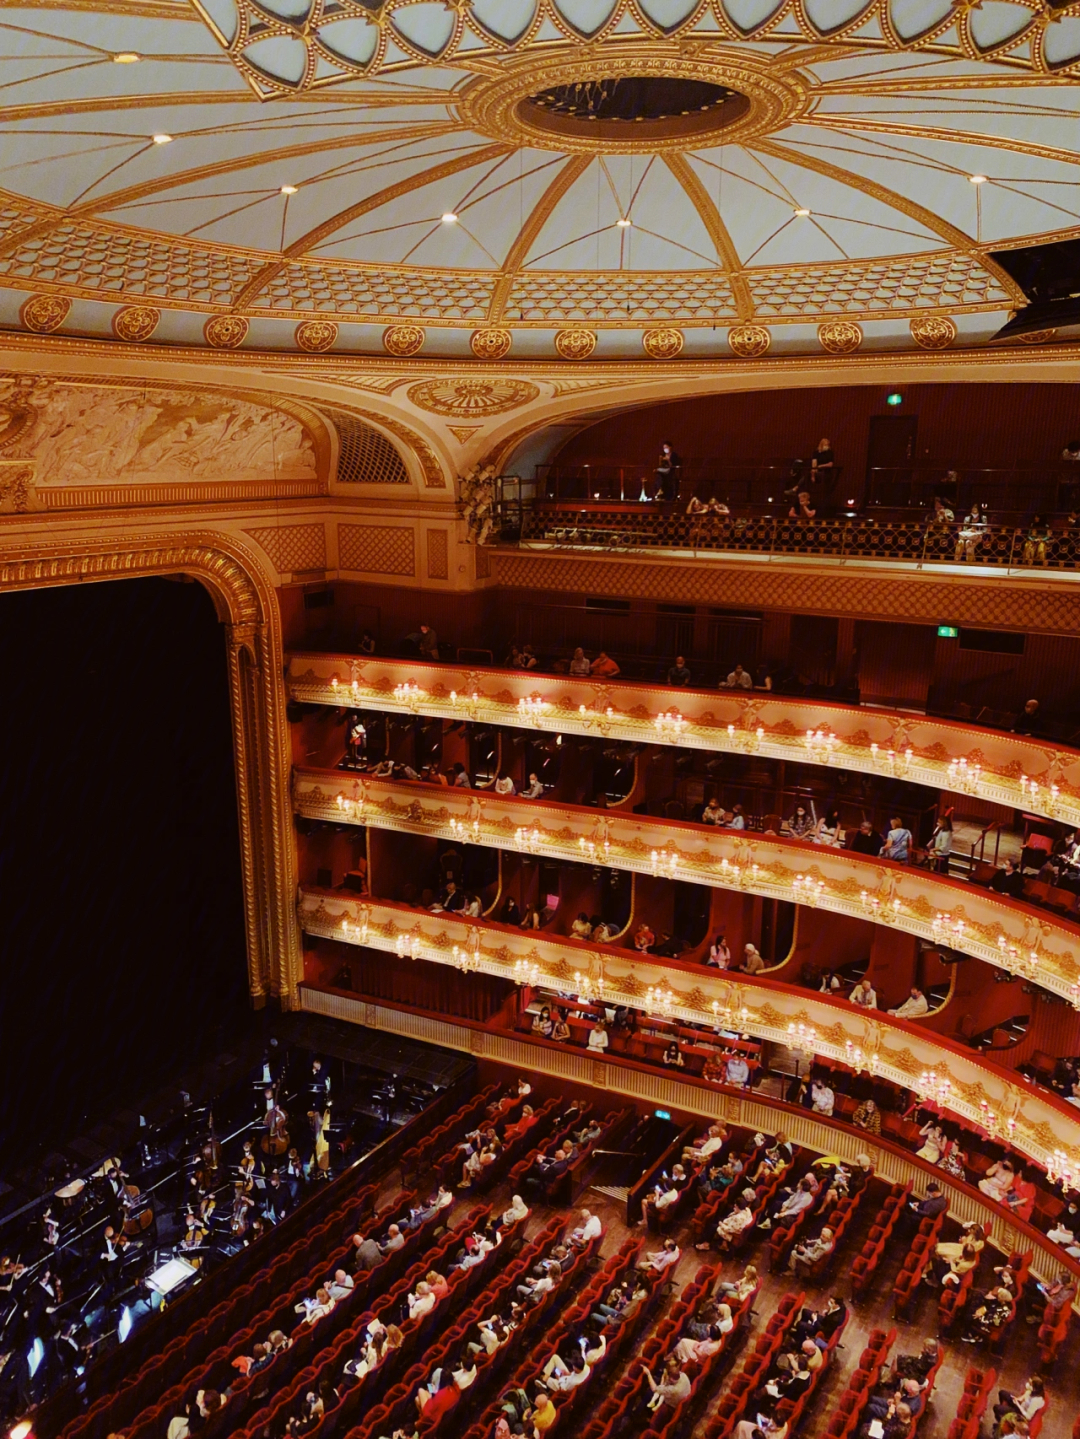 伦敦芭蕾舞剧02皇家歌剧院756镑的视听盛宴